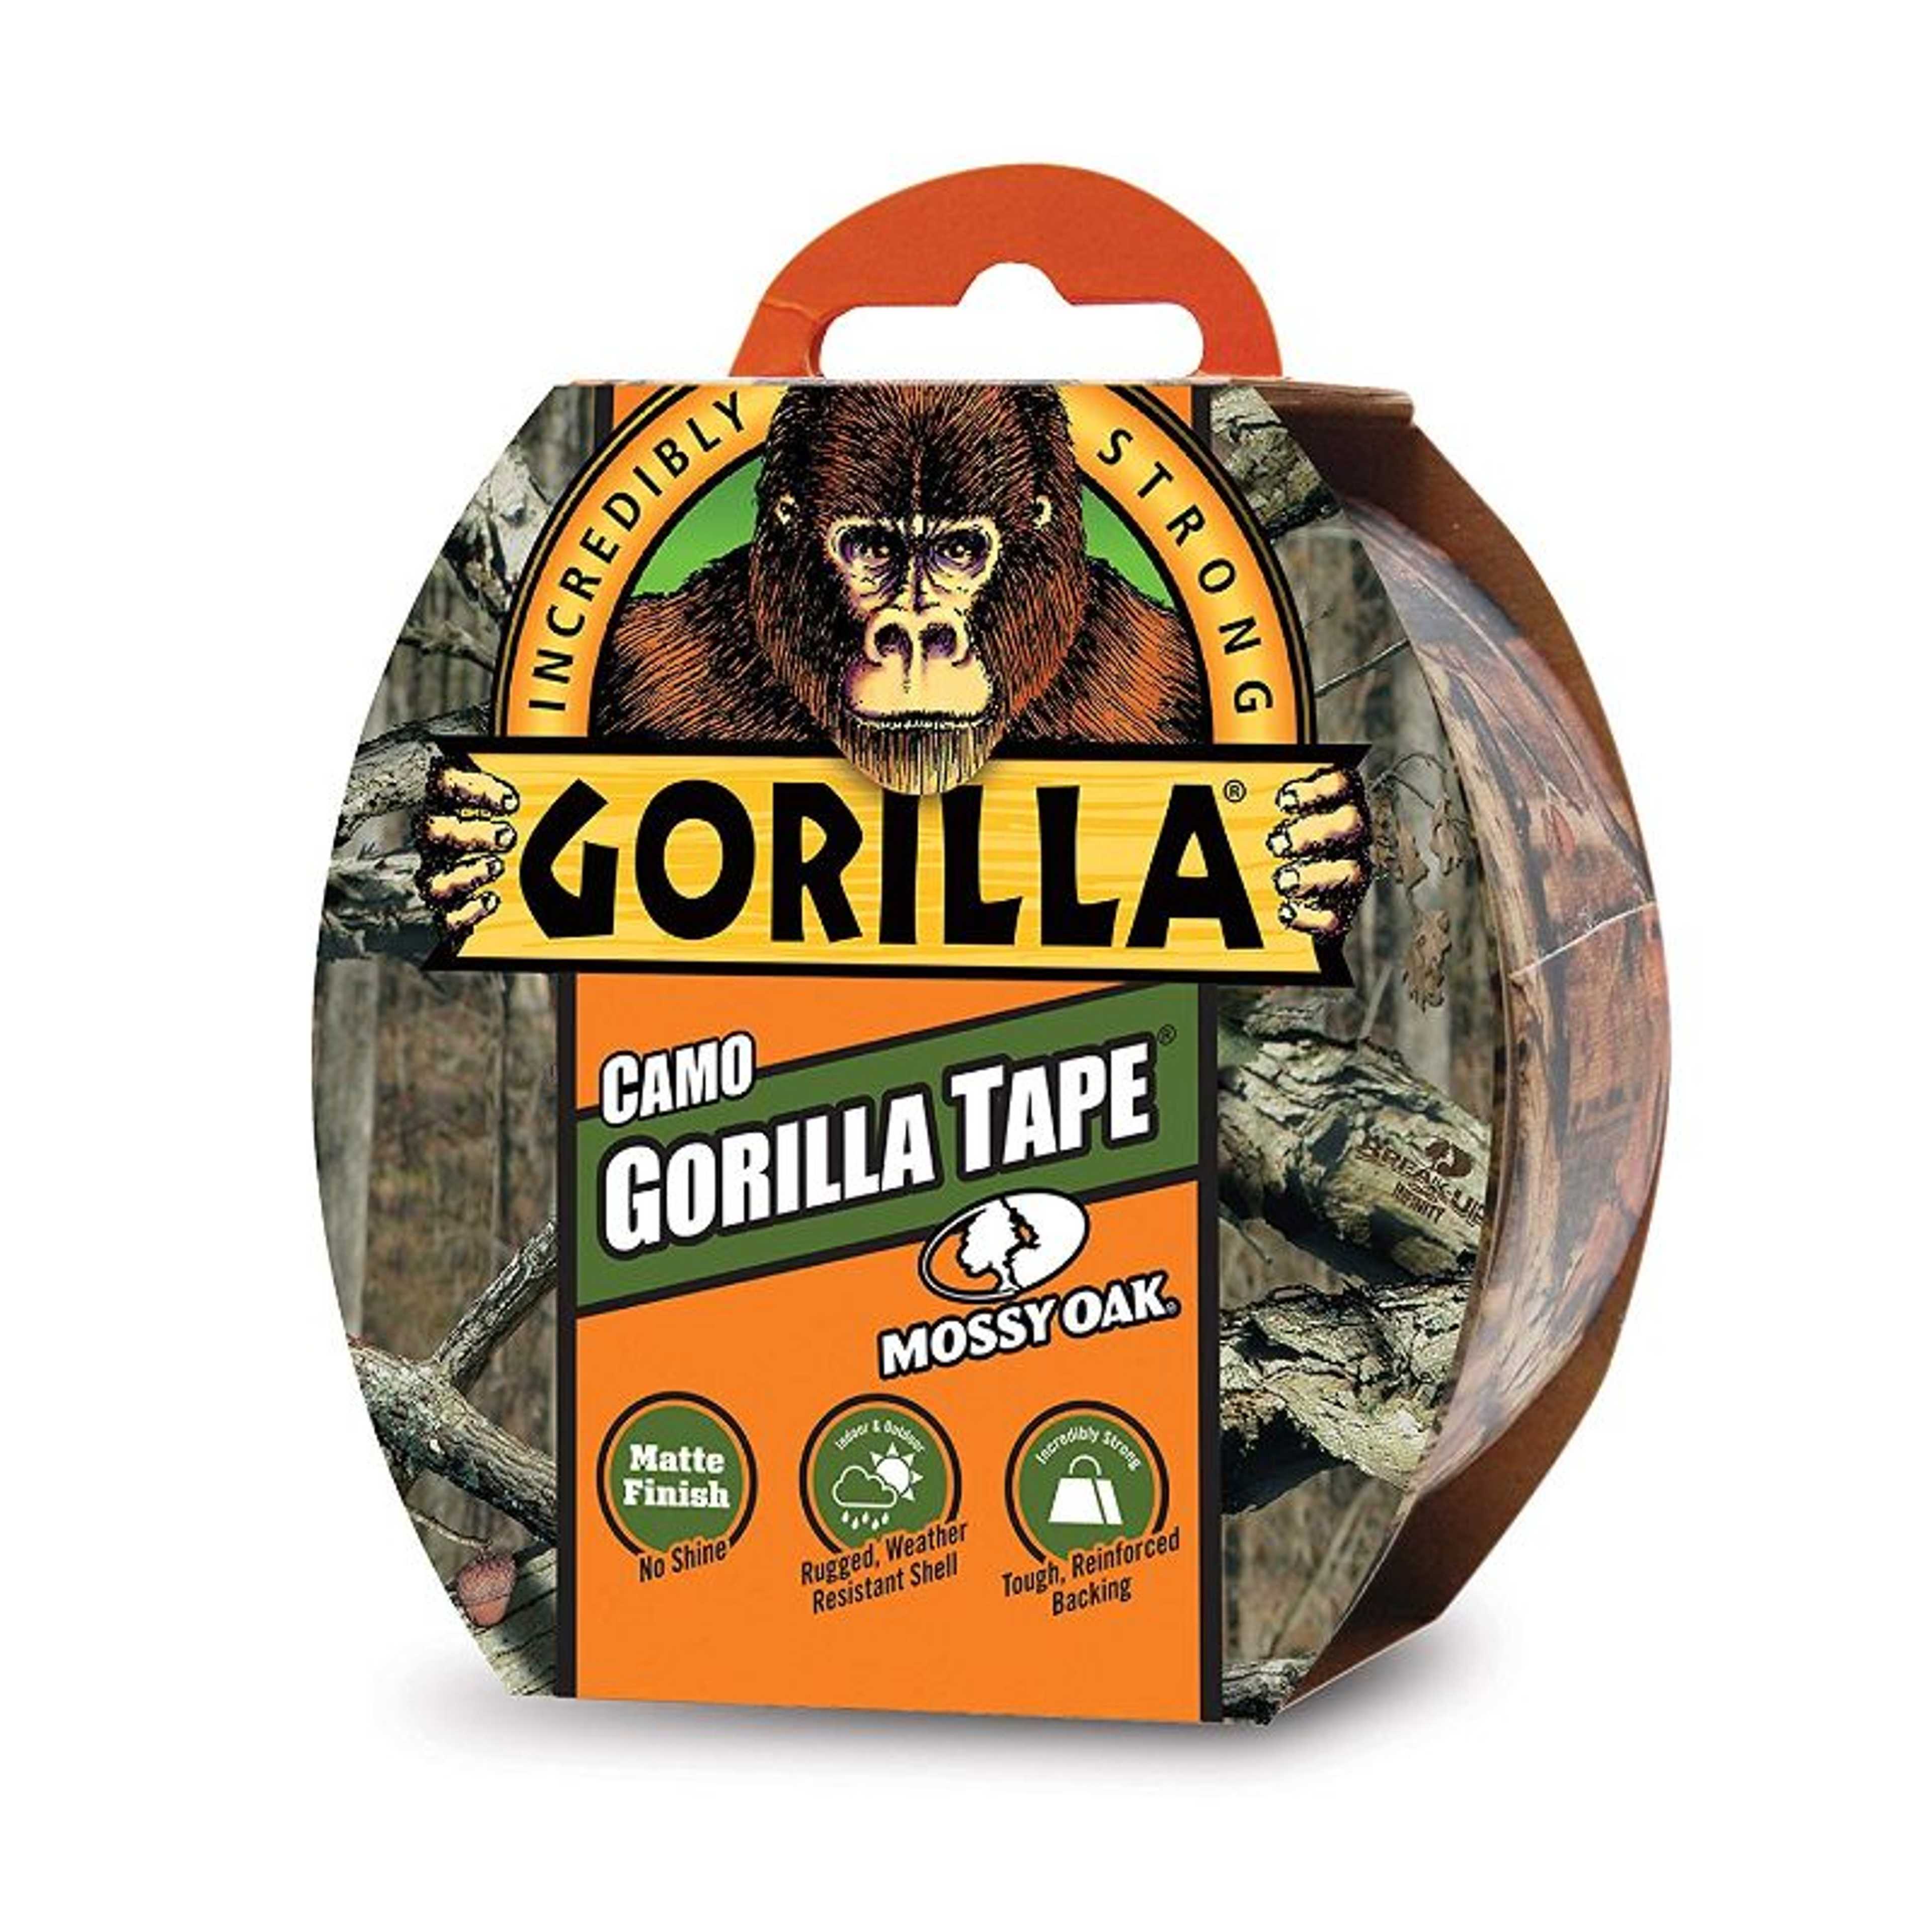 Gorilla Camo Duct Tape, 1.88 in x 9 yd, Mossy Oak,